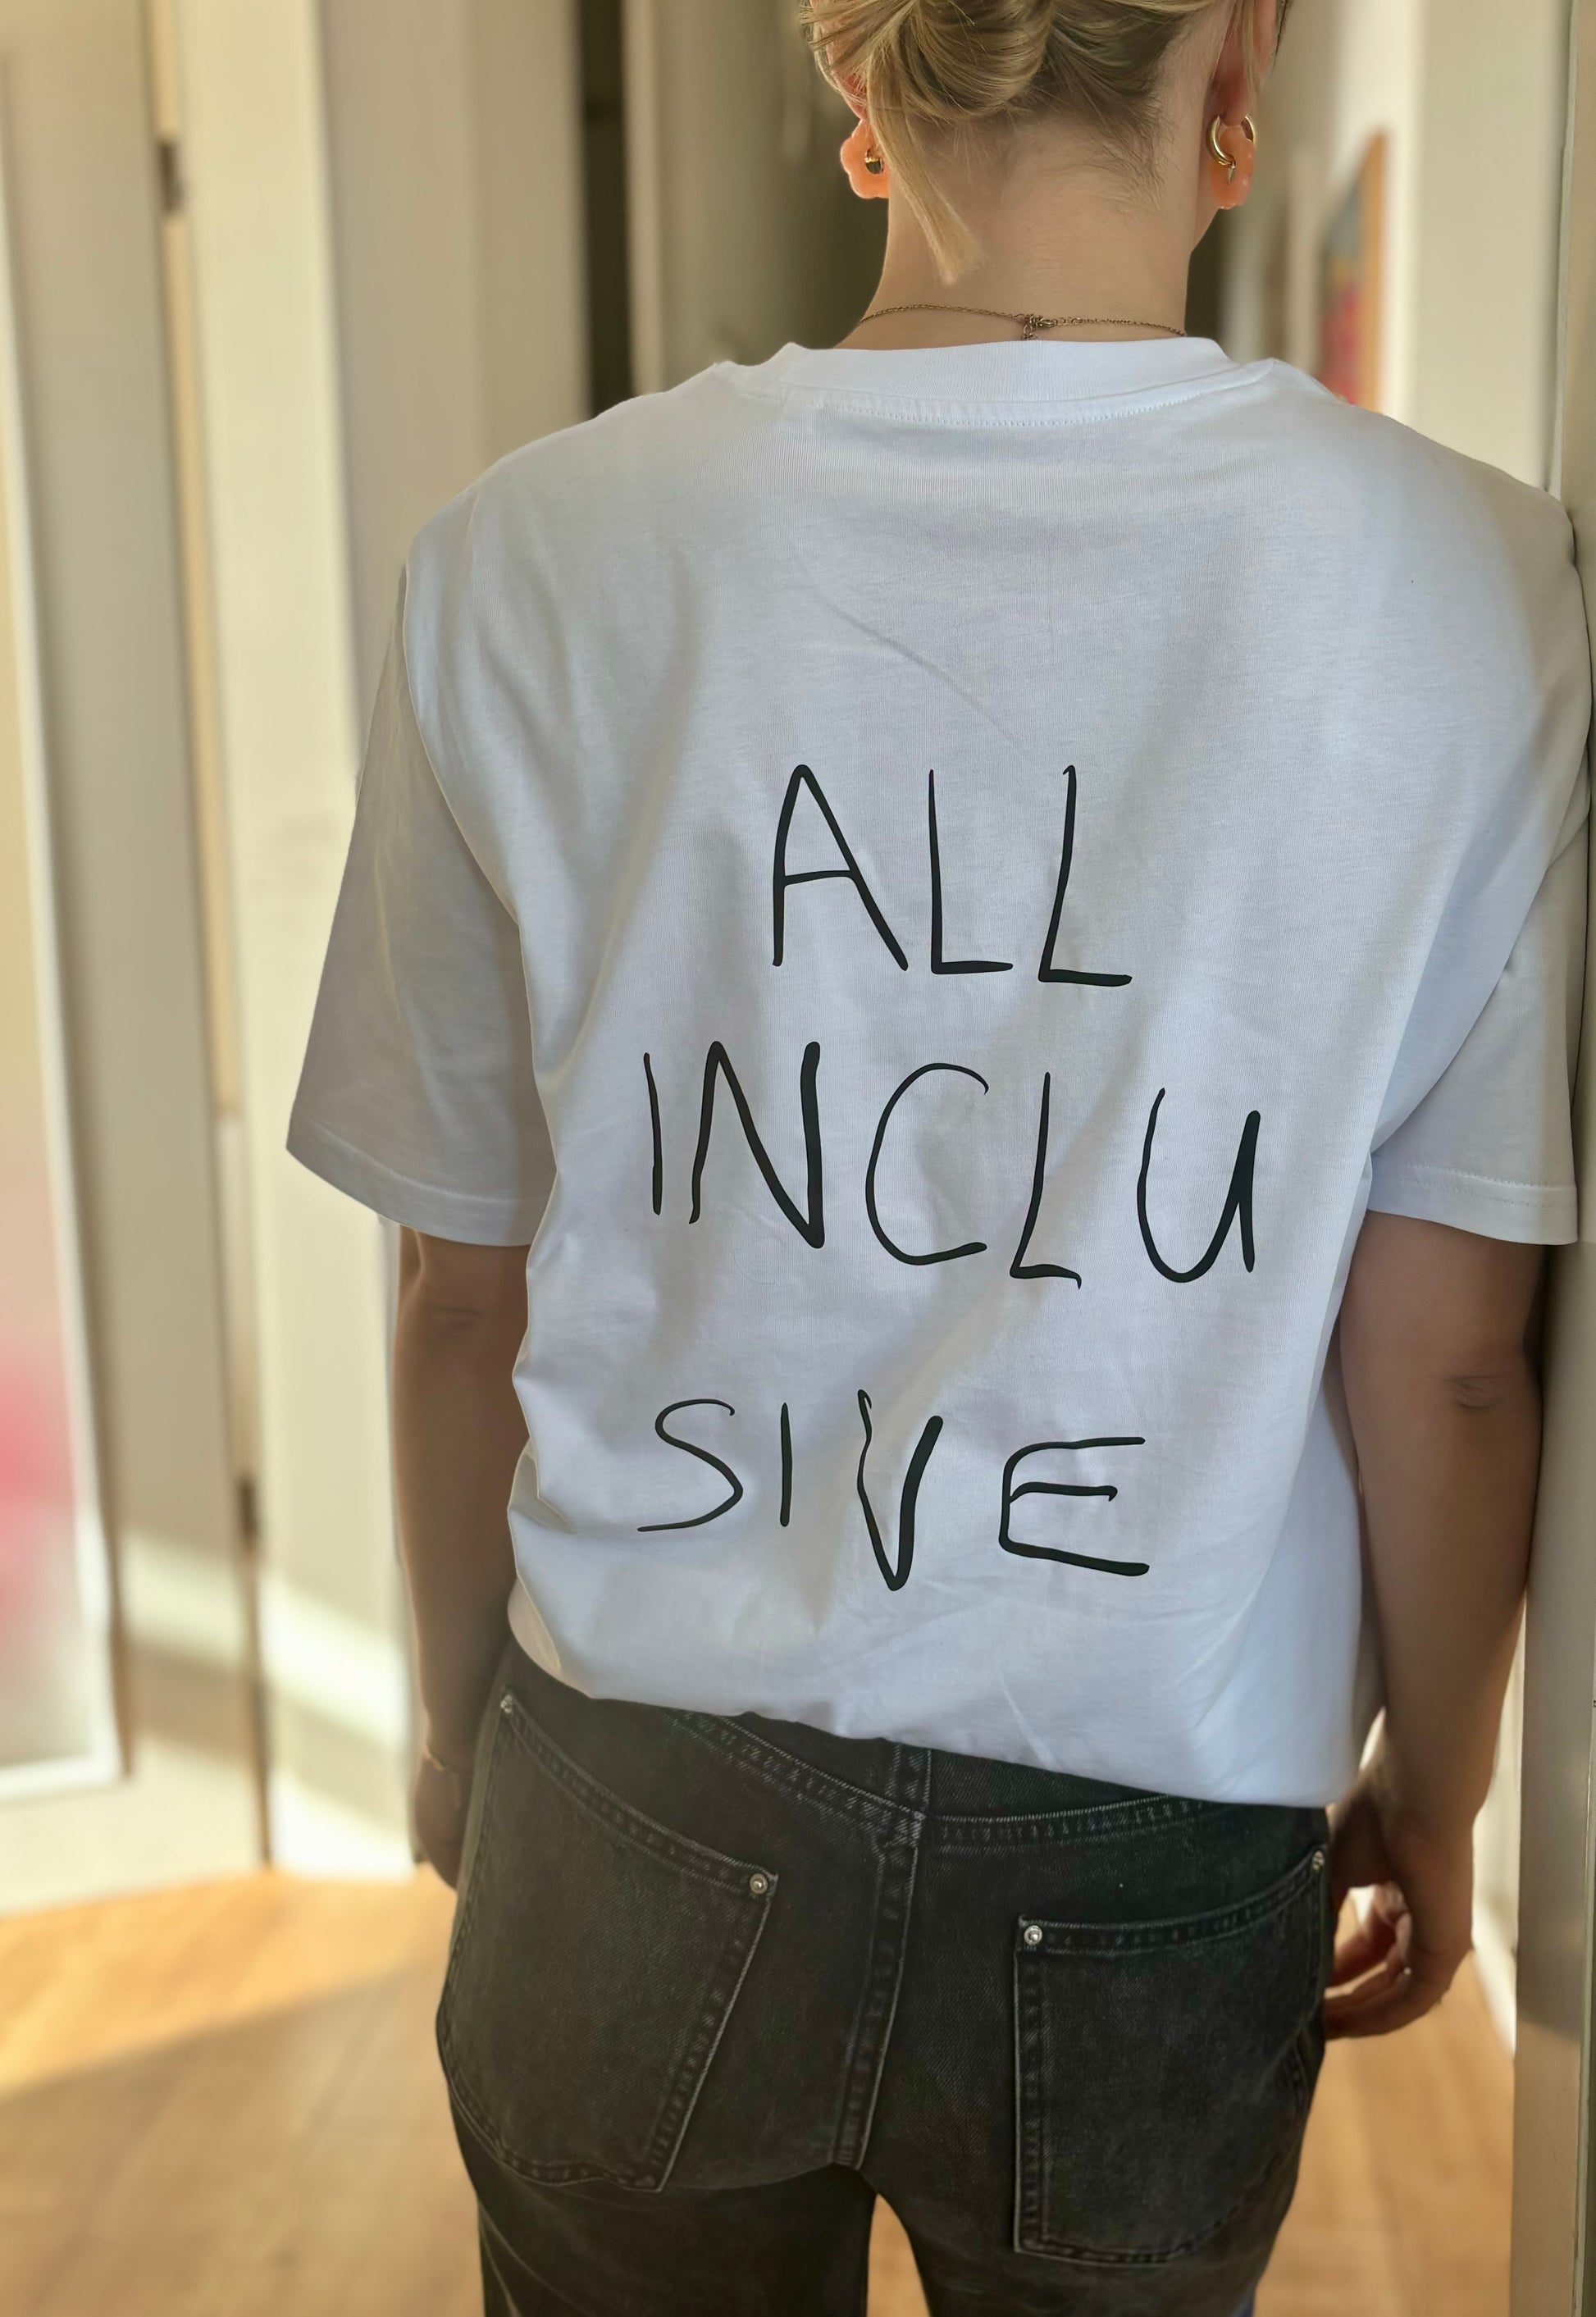 Foto vom T-Shirt "All Inclusive" von hinten. Auf dem Shirt ist ein großer Schriftzug handgeschrieben mit "All Inclusive"